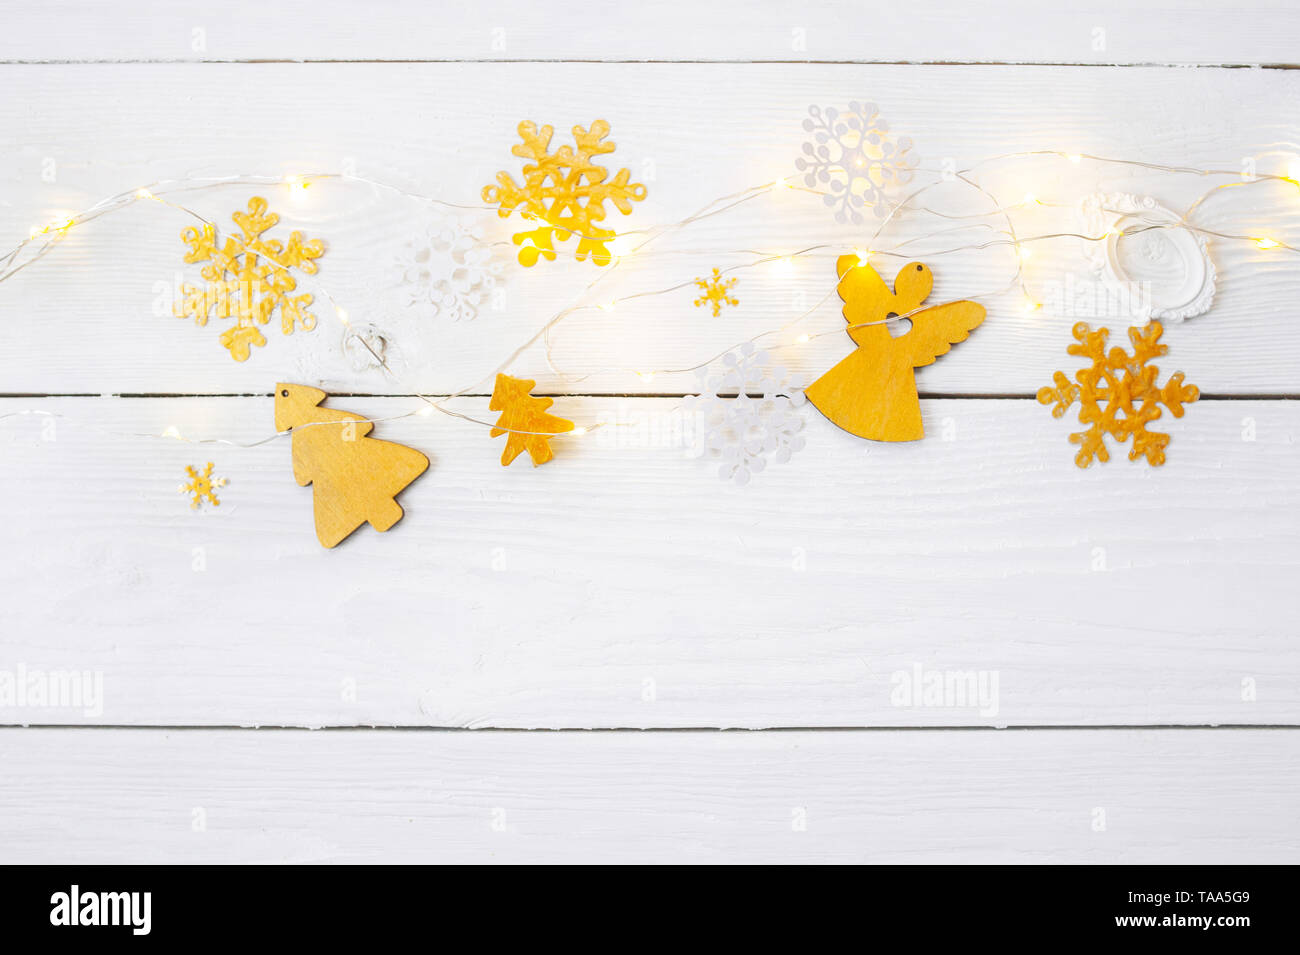 Weihnachten Hintergrund für Grußkarte mit Platz für Text. Weihnachten goldene Spielzeug und Band auf Holzhintergrund. Flach liegend, Draufsicht Fotomockup Stockfoto